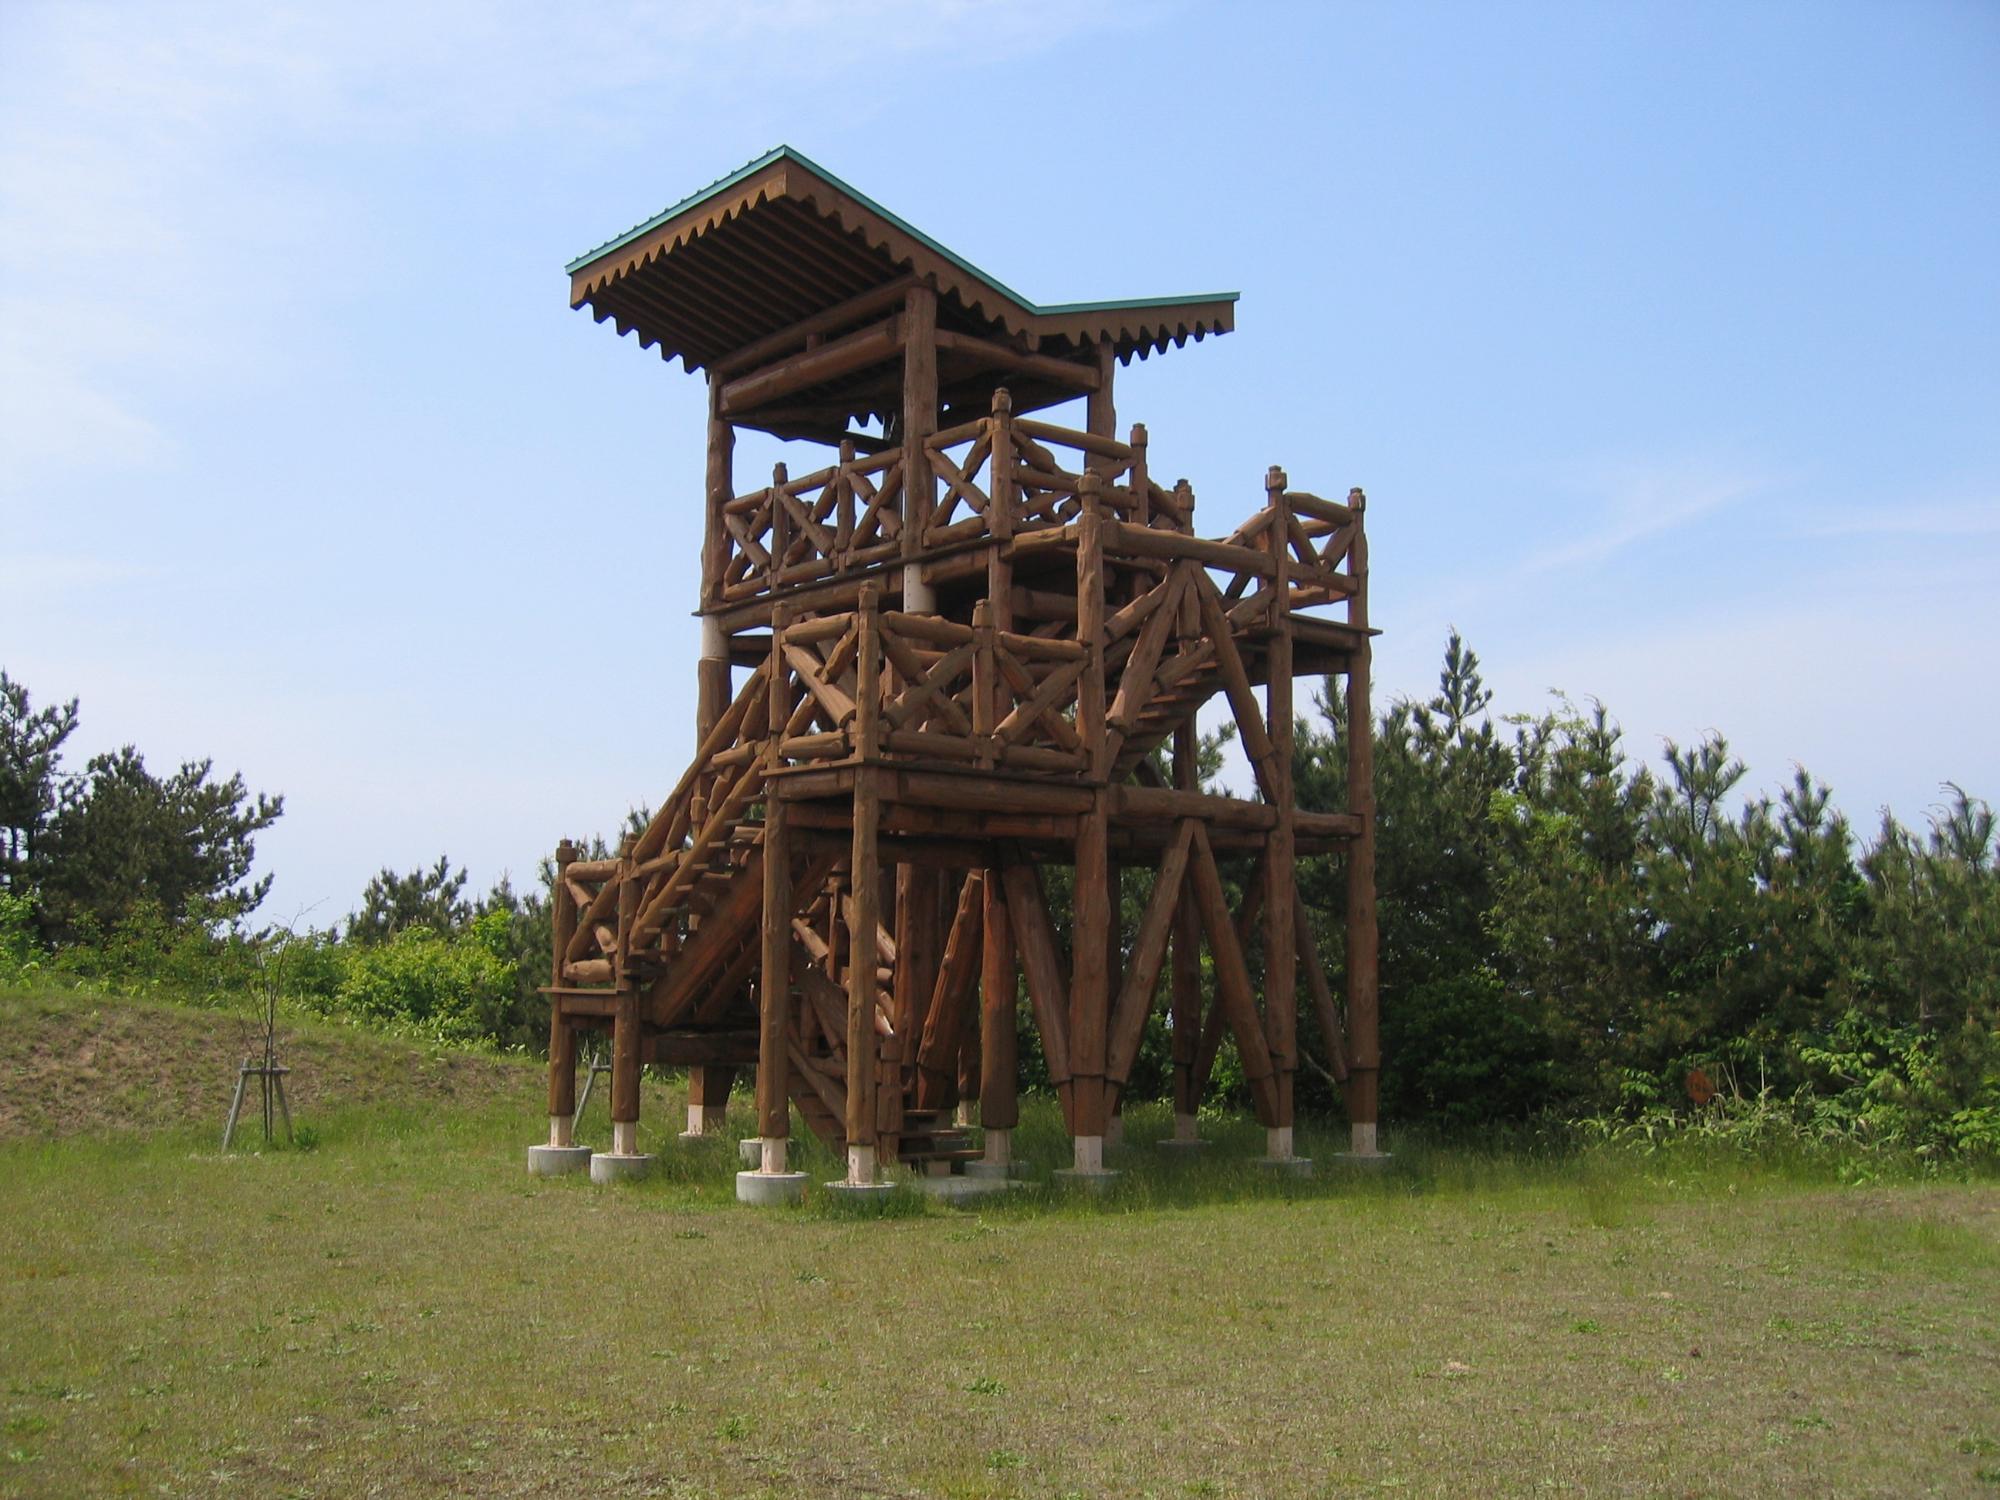 木材の丸太で造られ、回るように階段が作られ展望台に上がっている呑龍岳展望台を写した写真